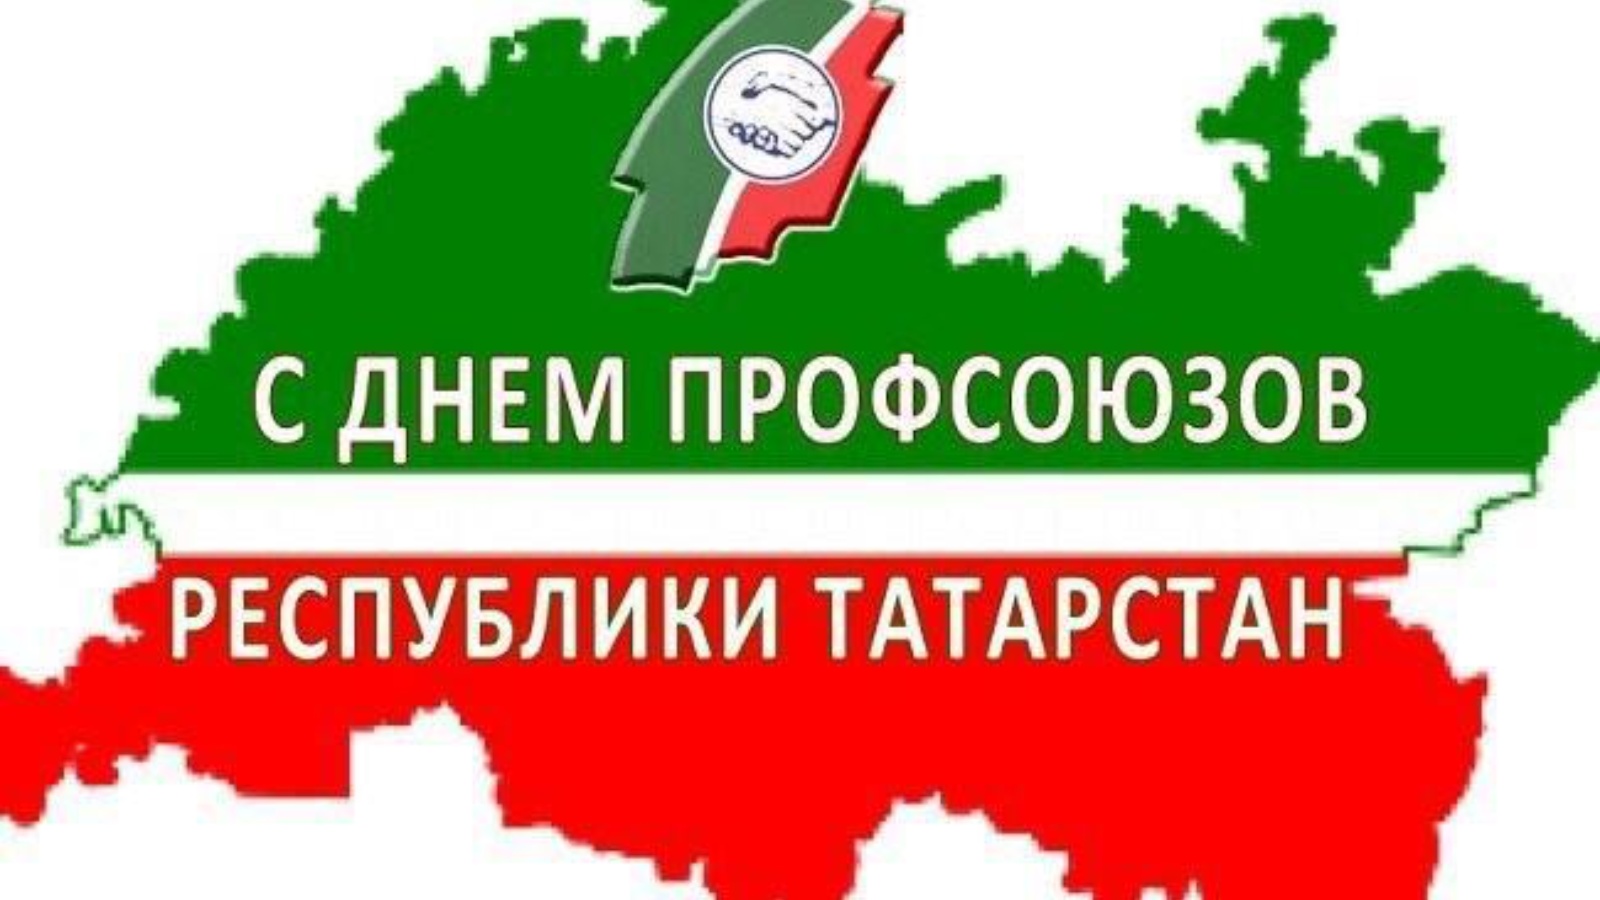 Поздравление с днем профсоюзов Республики Татарстан